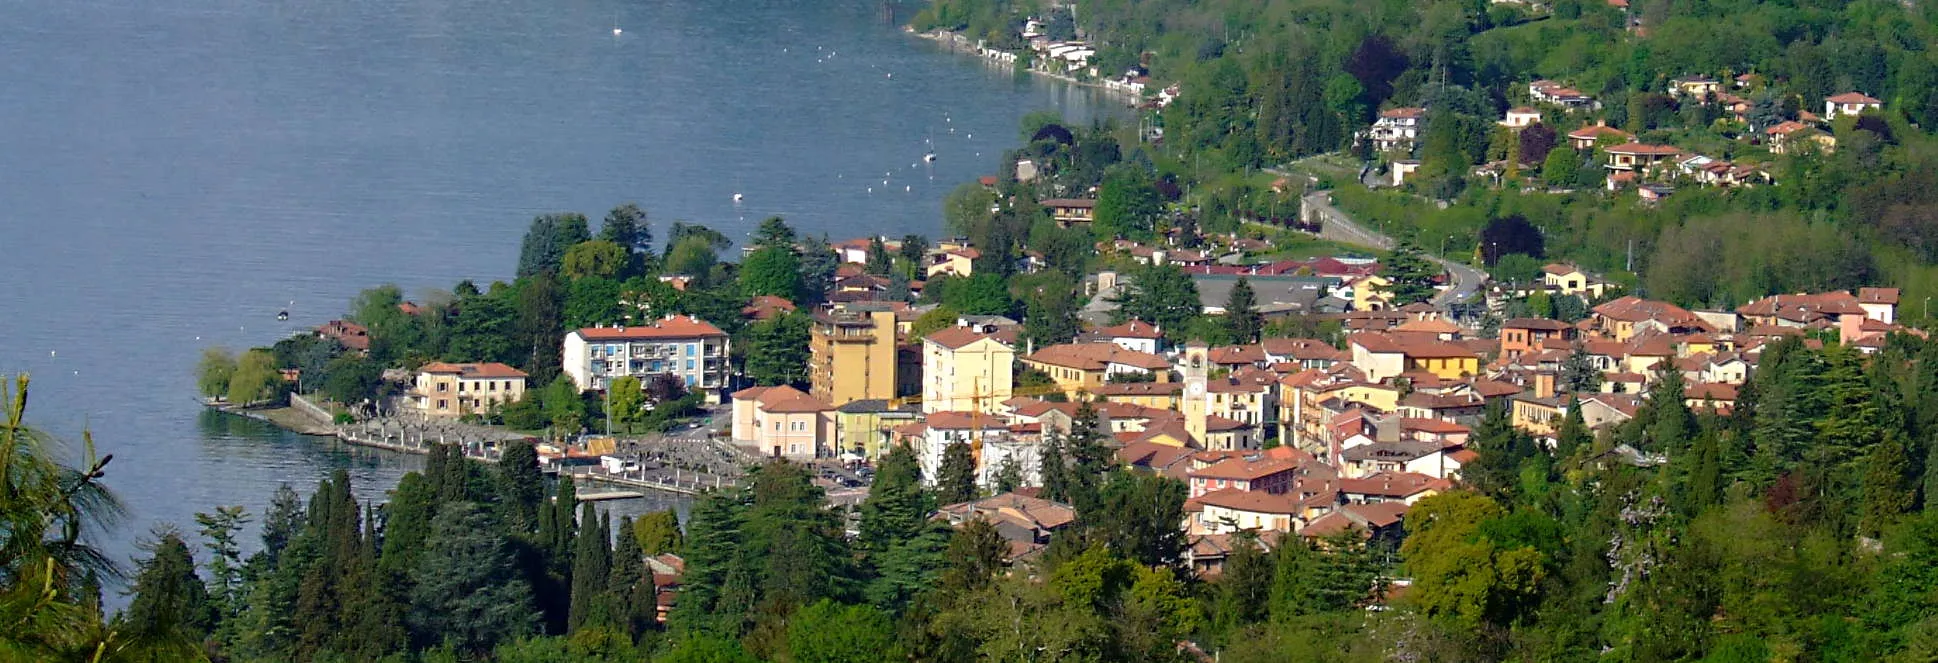 Image of Porto Valtravaglia